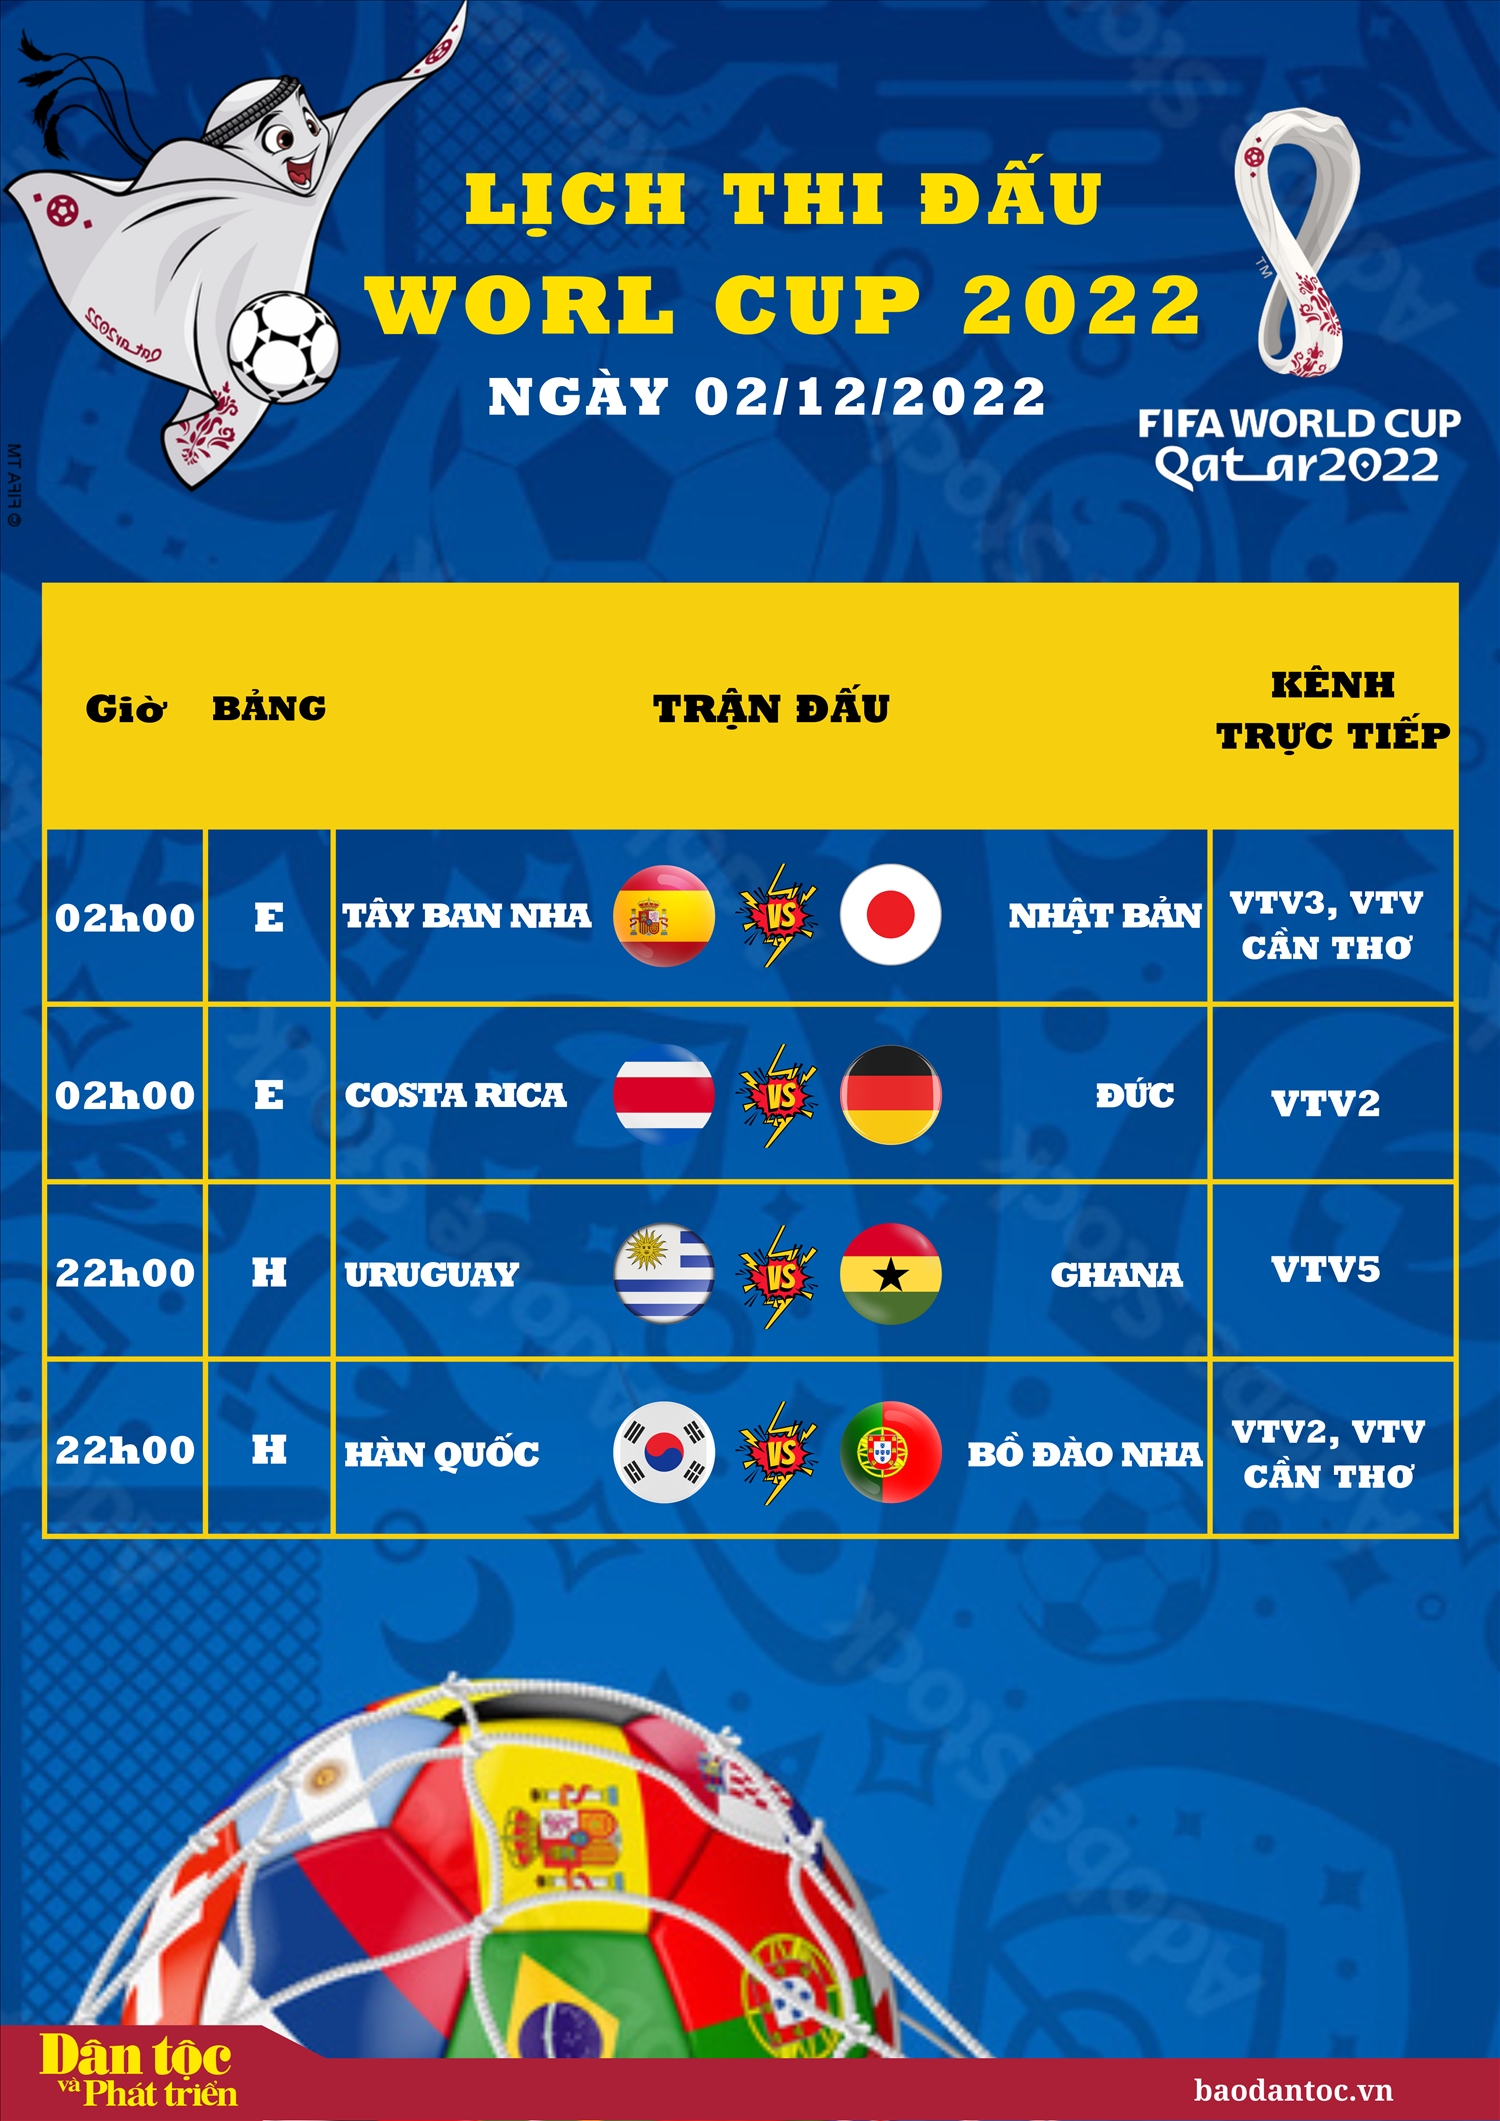 Lịch thi đấu World Cup 2022 ngày 2/12/2022